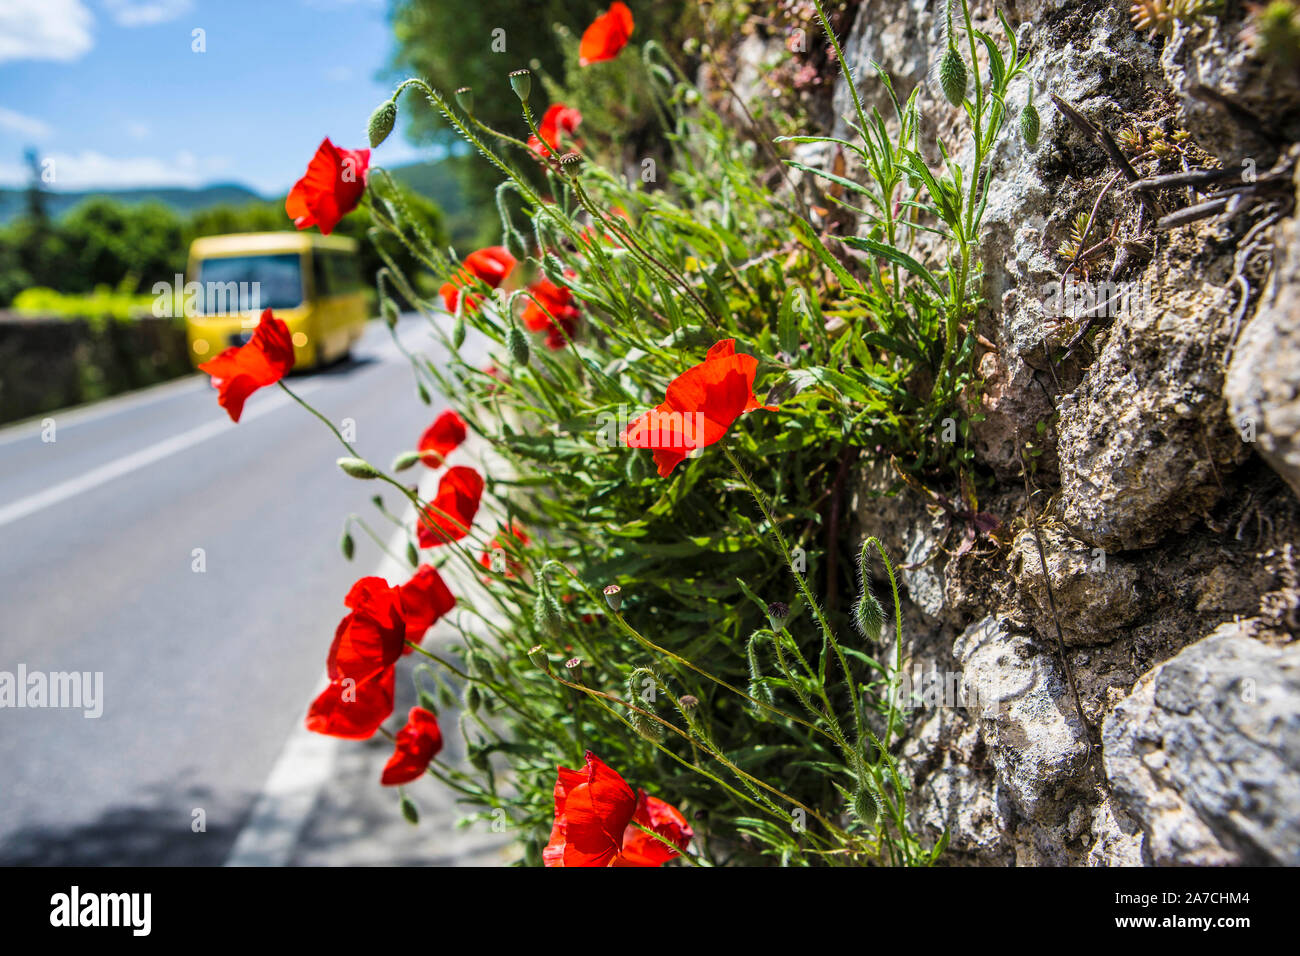 Knallrote Mohnblumen wachsen aus einer alten Mauer une einer Landstrasse in der Toskana bei Sienne. Banque D'Images